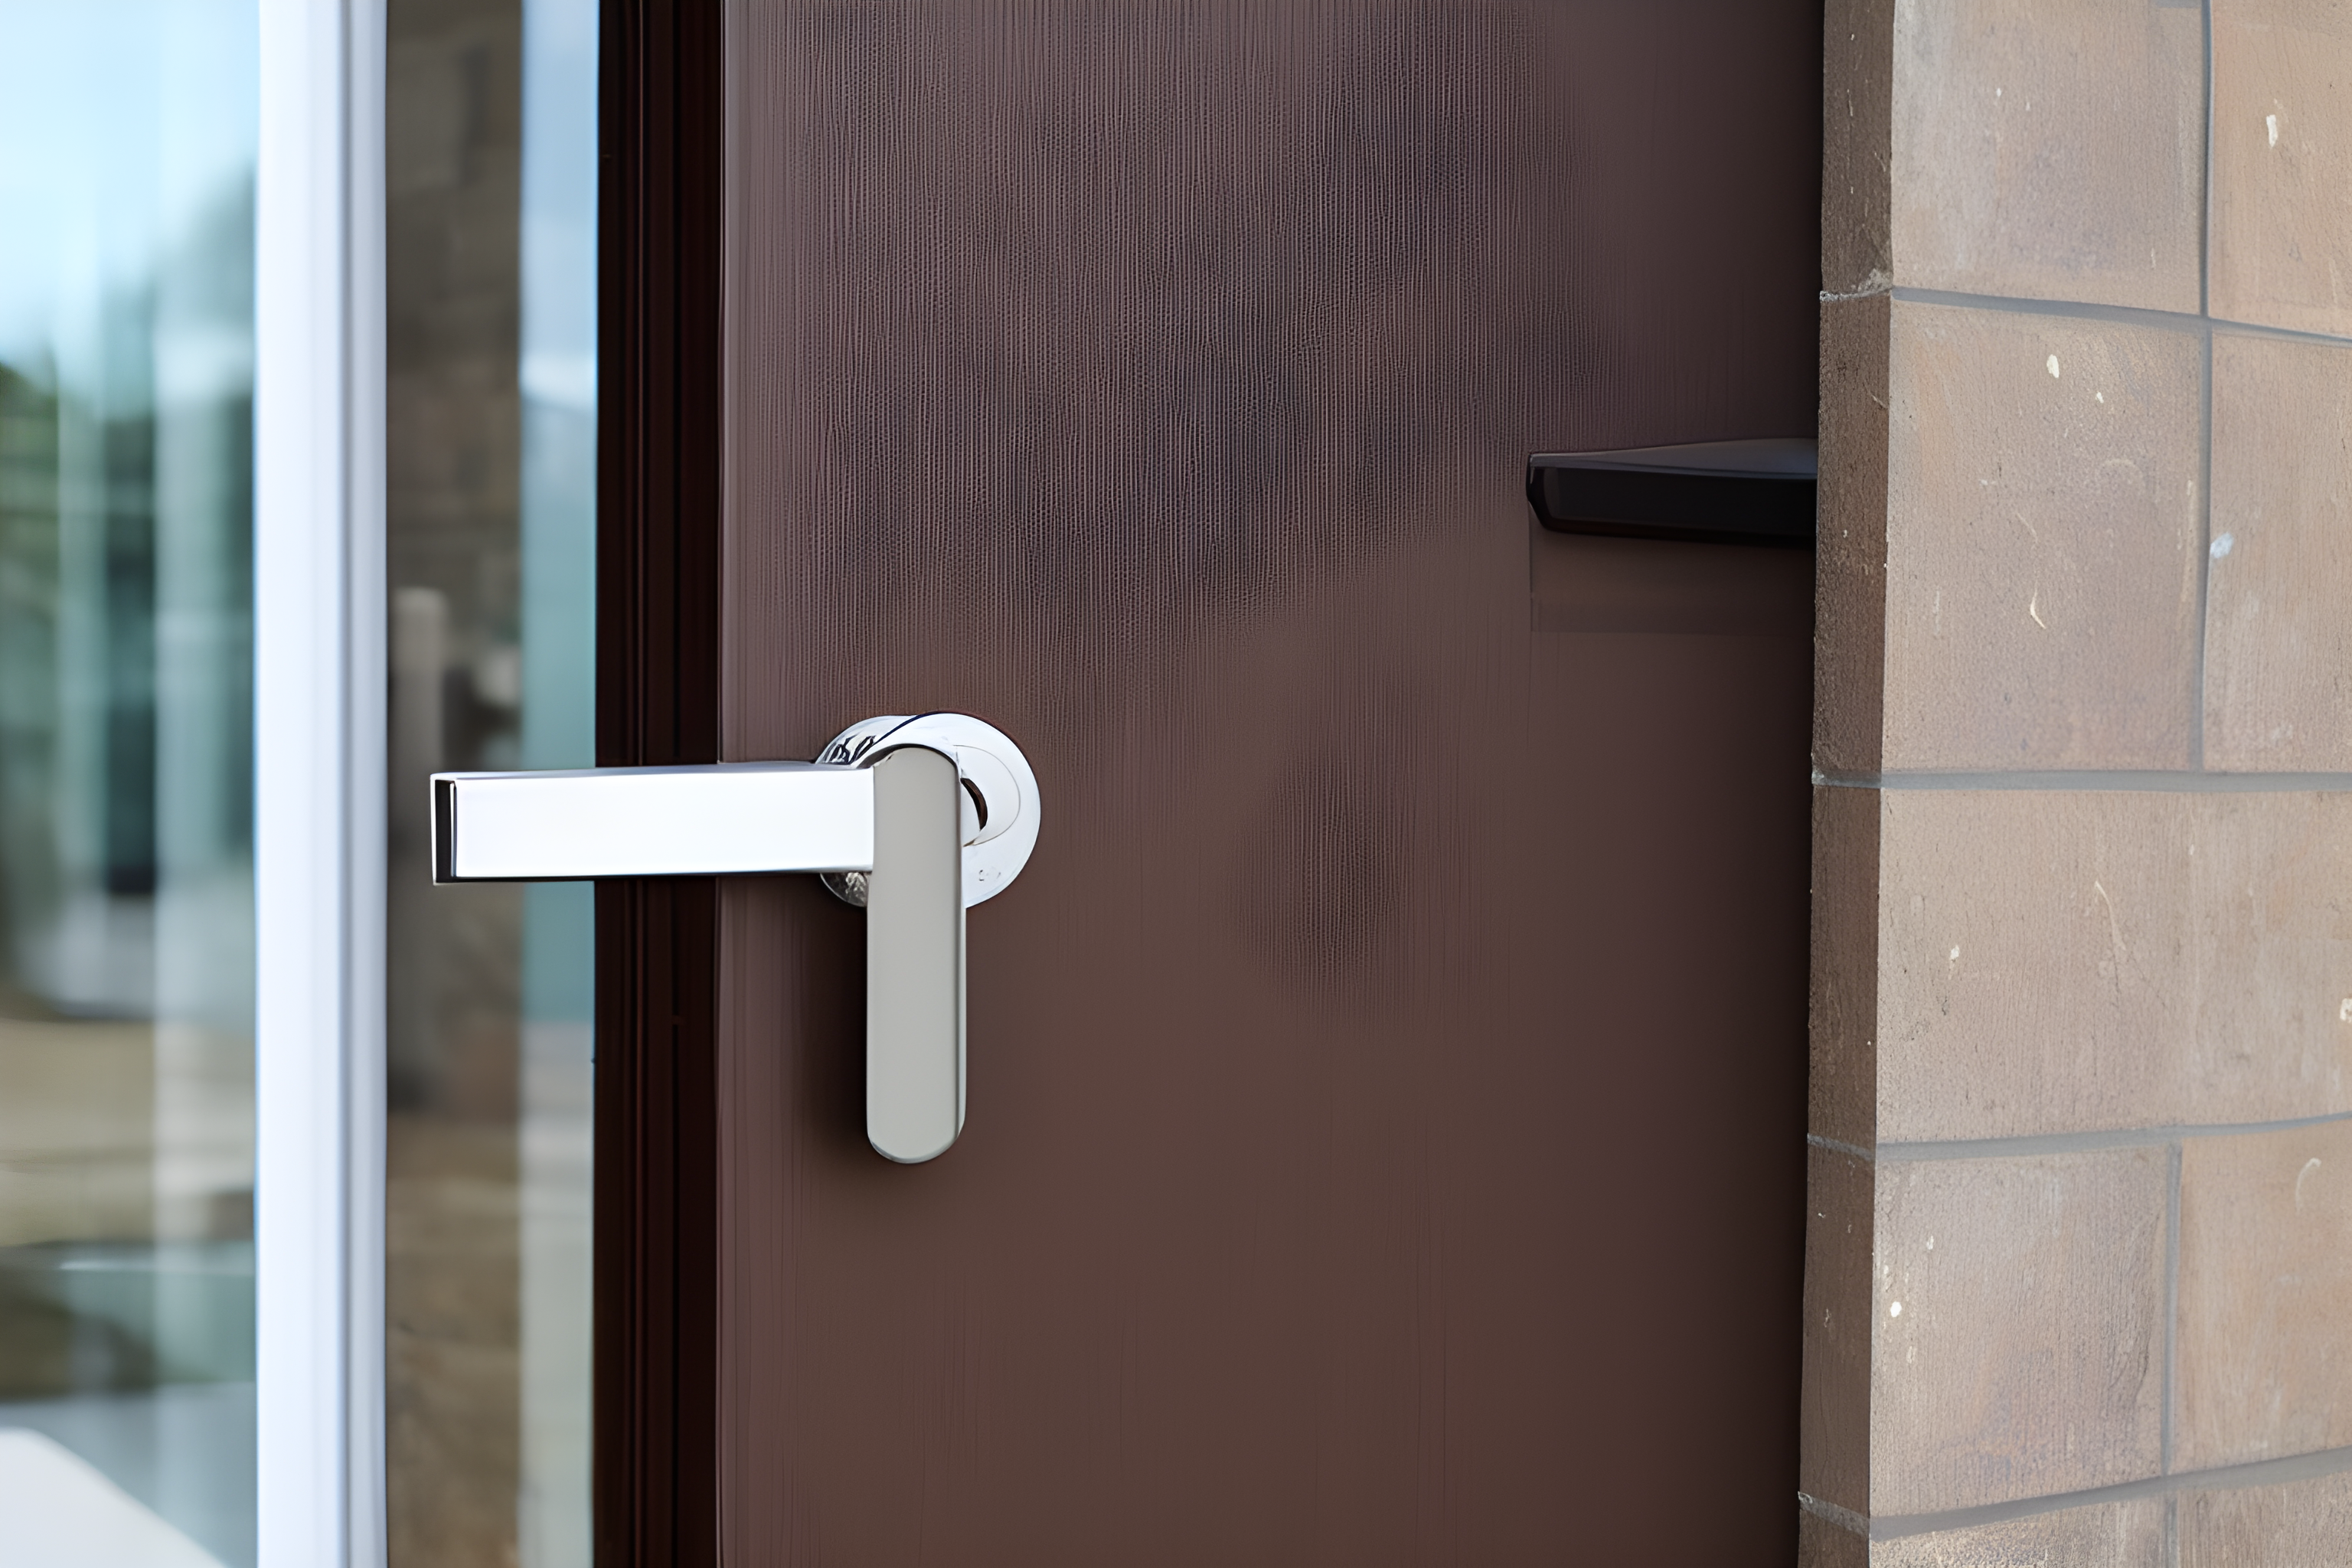 5 ways to secure your front door against break-ins